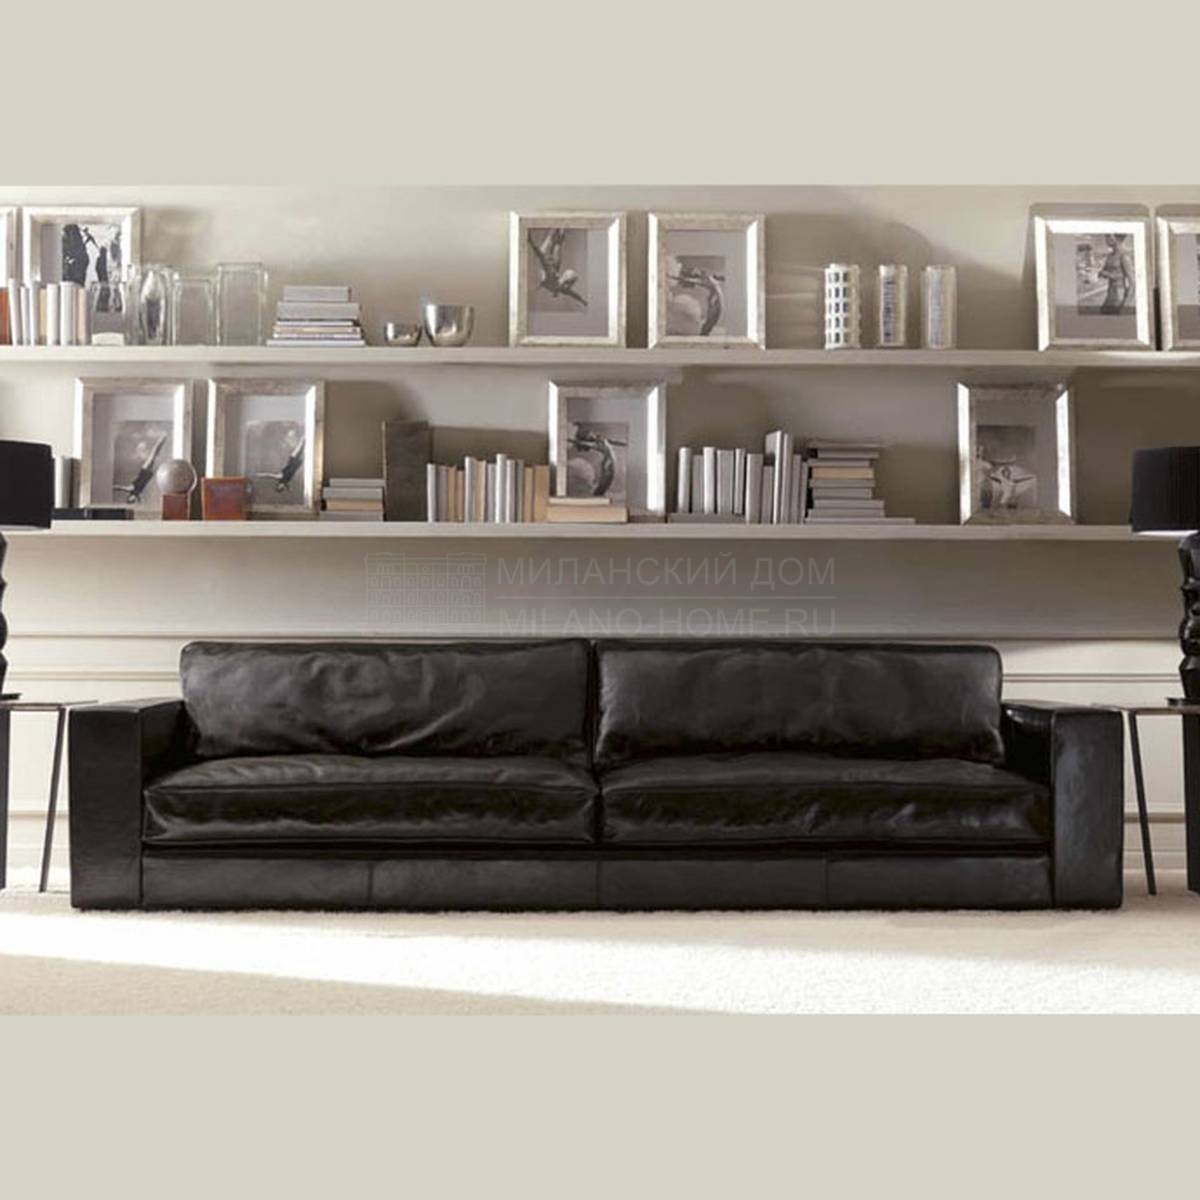 Прямой диван Billy Sofa из Италии фабрики ULIVI